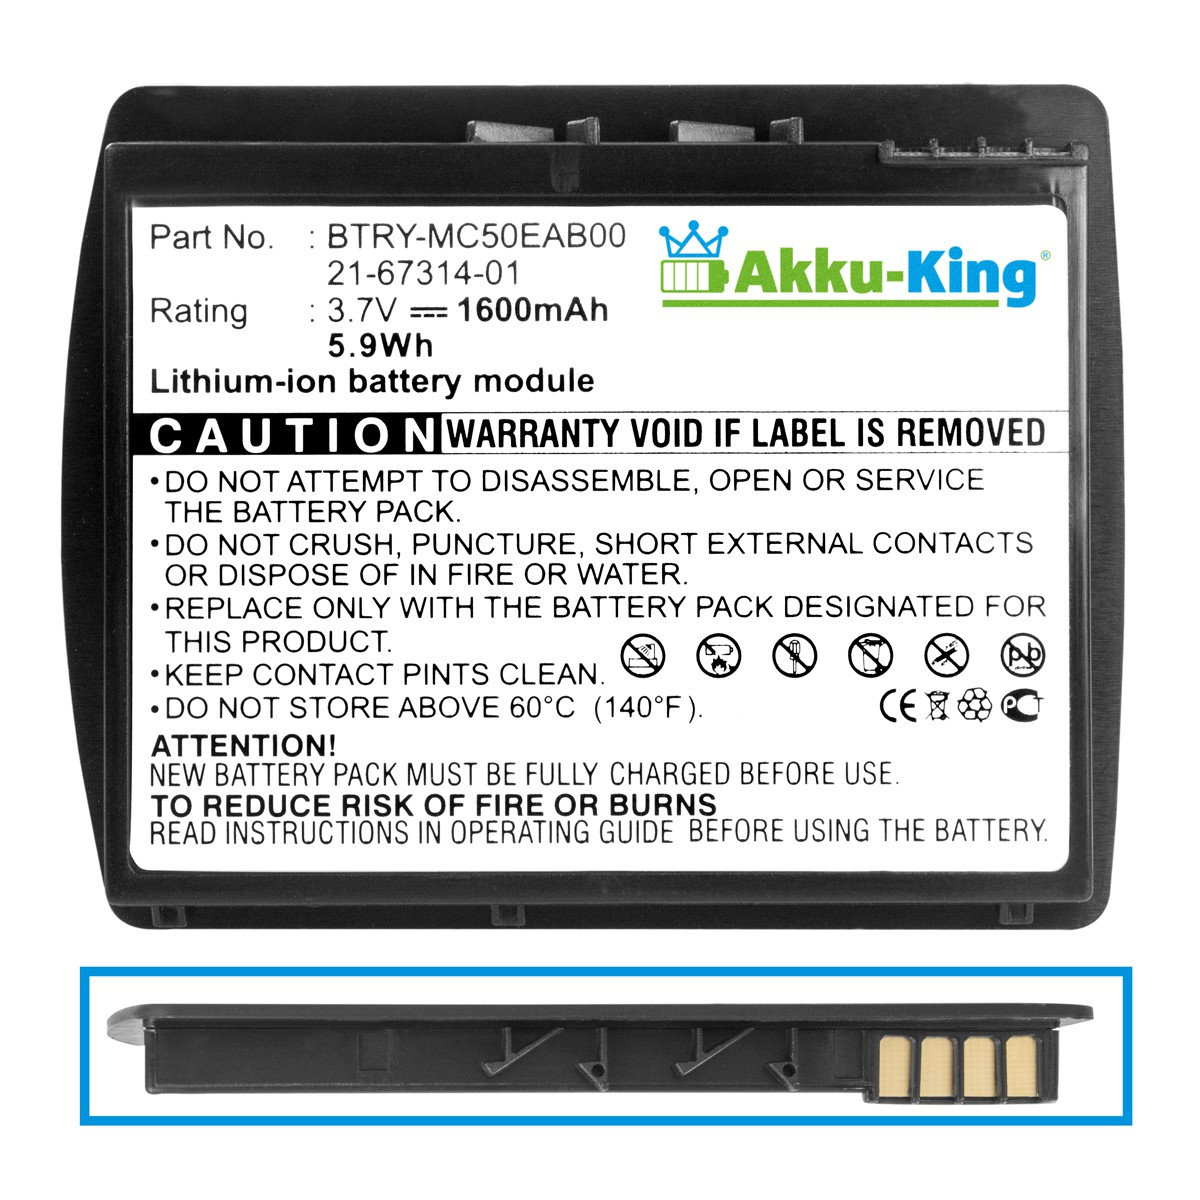 AKKU-KING Akku Volt, BTRY-MC50EAB00 1600mAh Li-Ion Geräte-Akku, kompatibel 3.7 Symbol mit